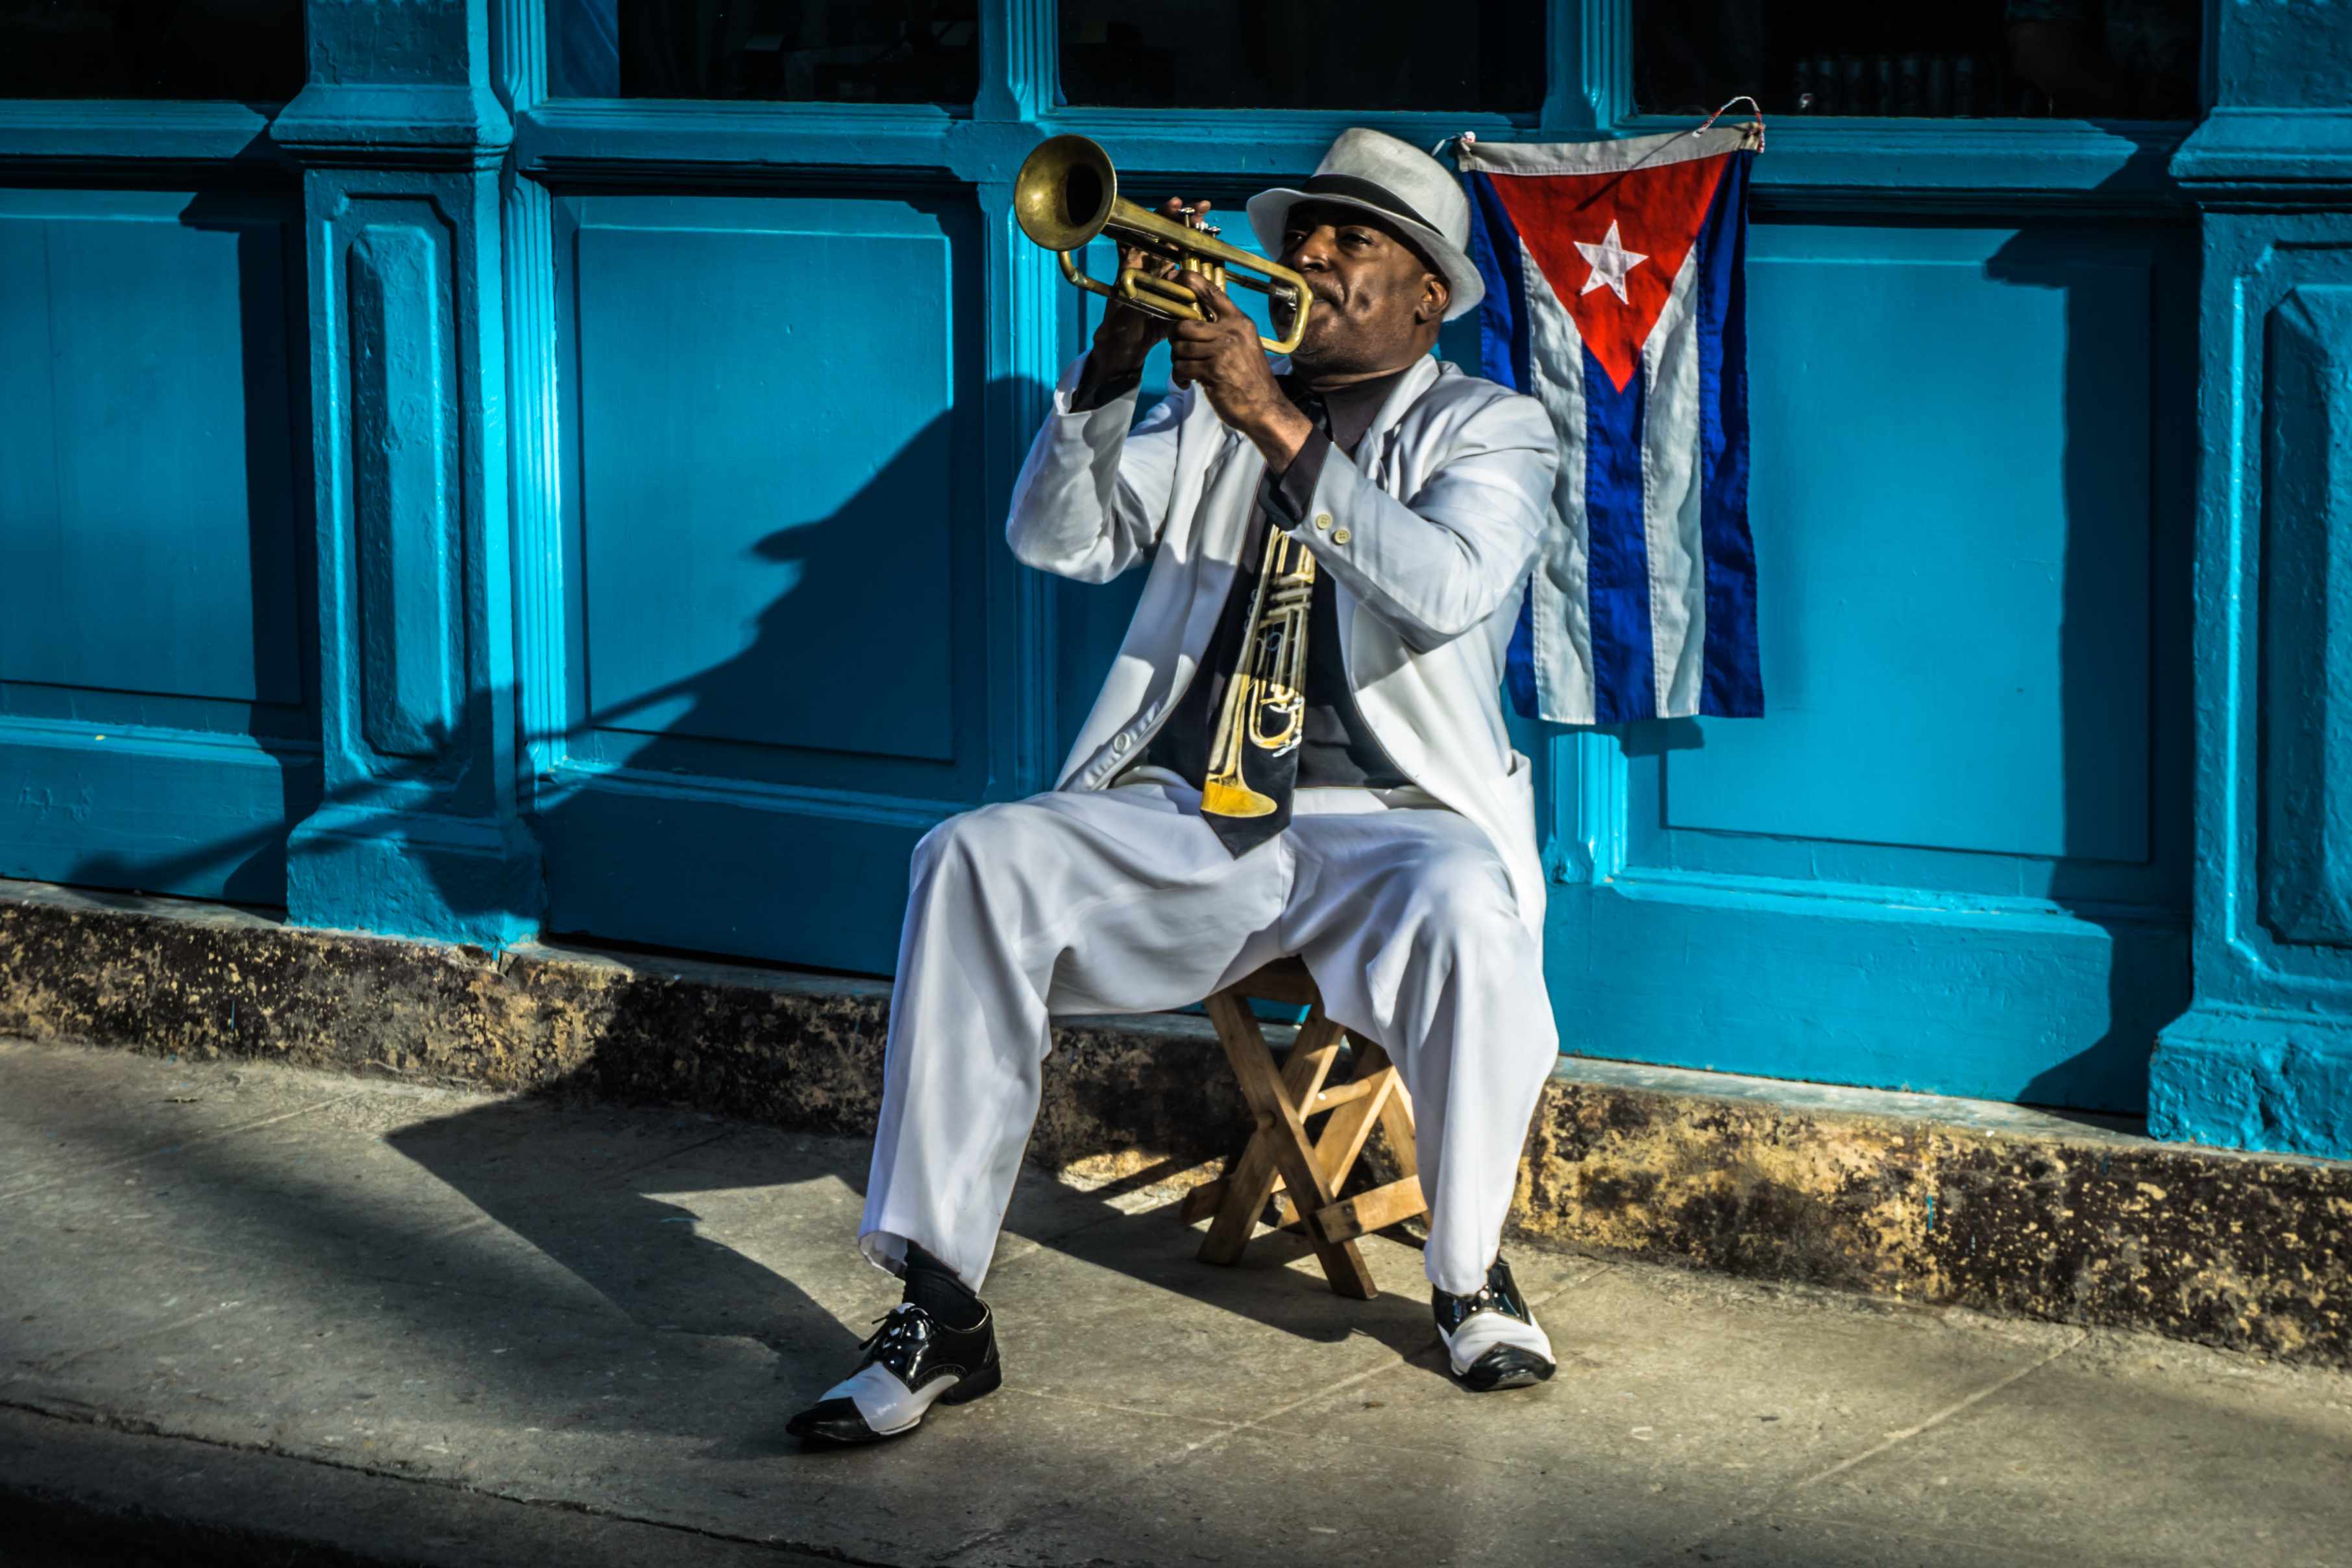 La Havane.